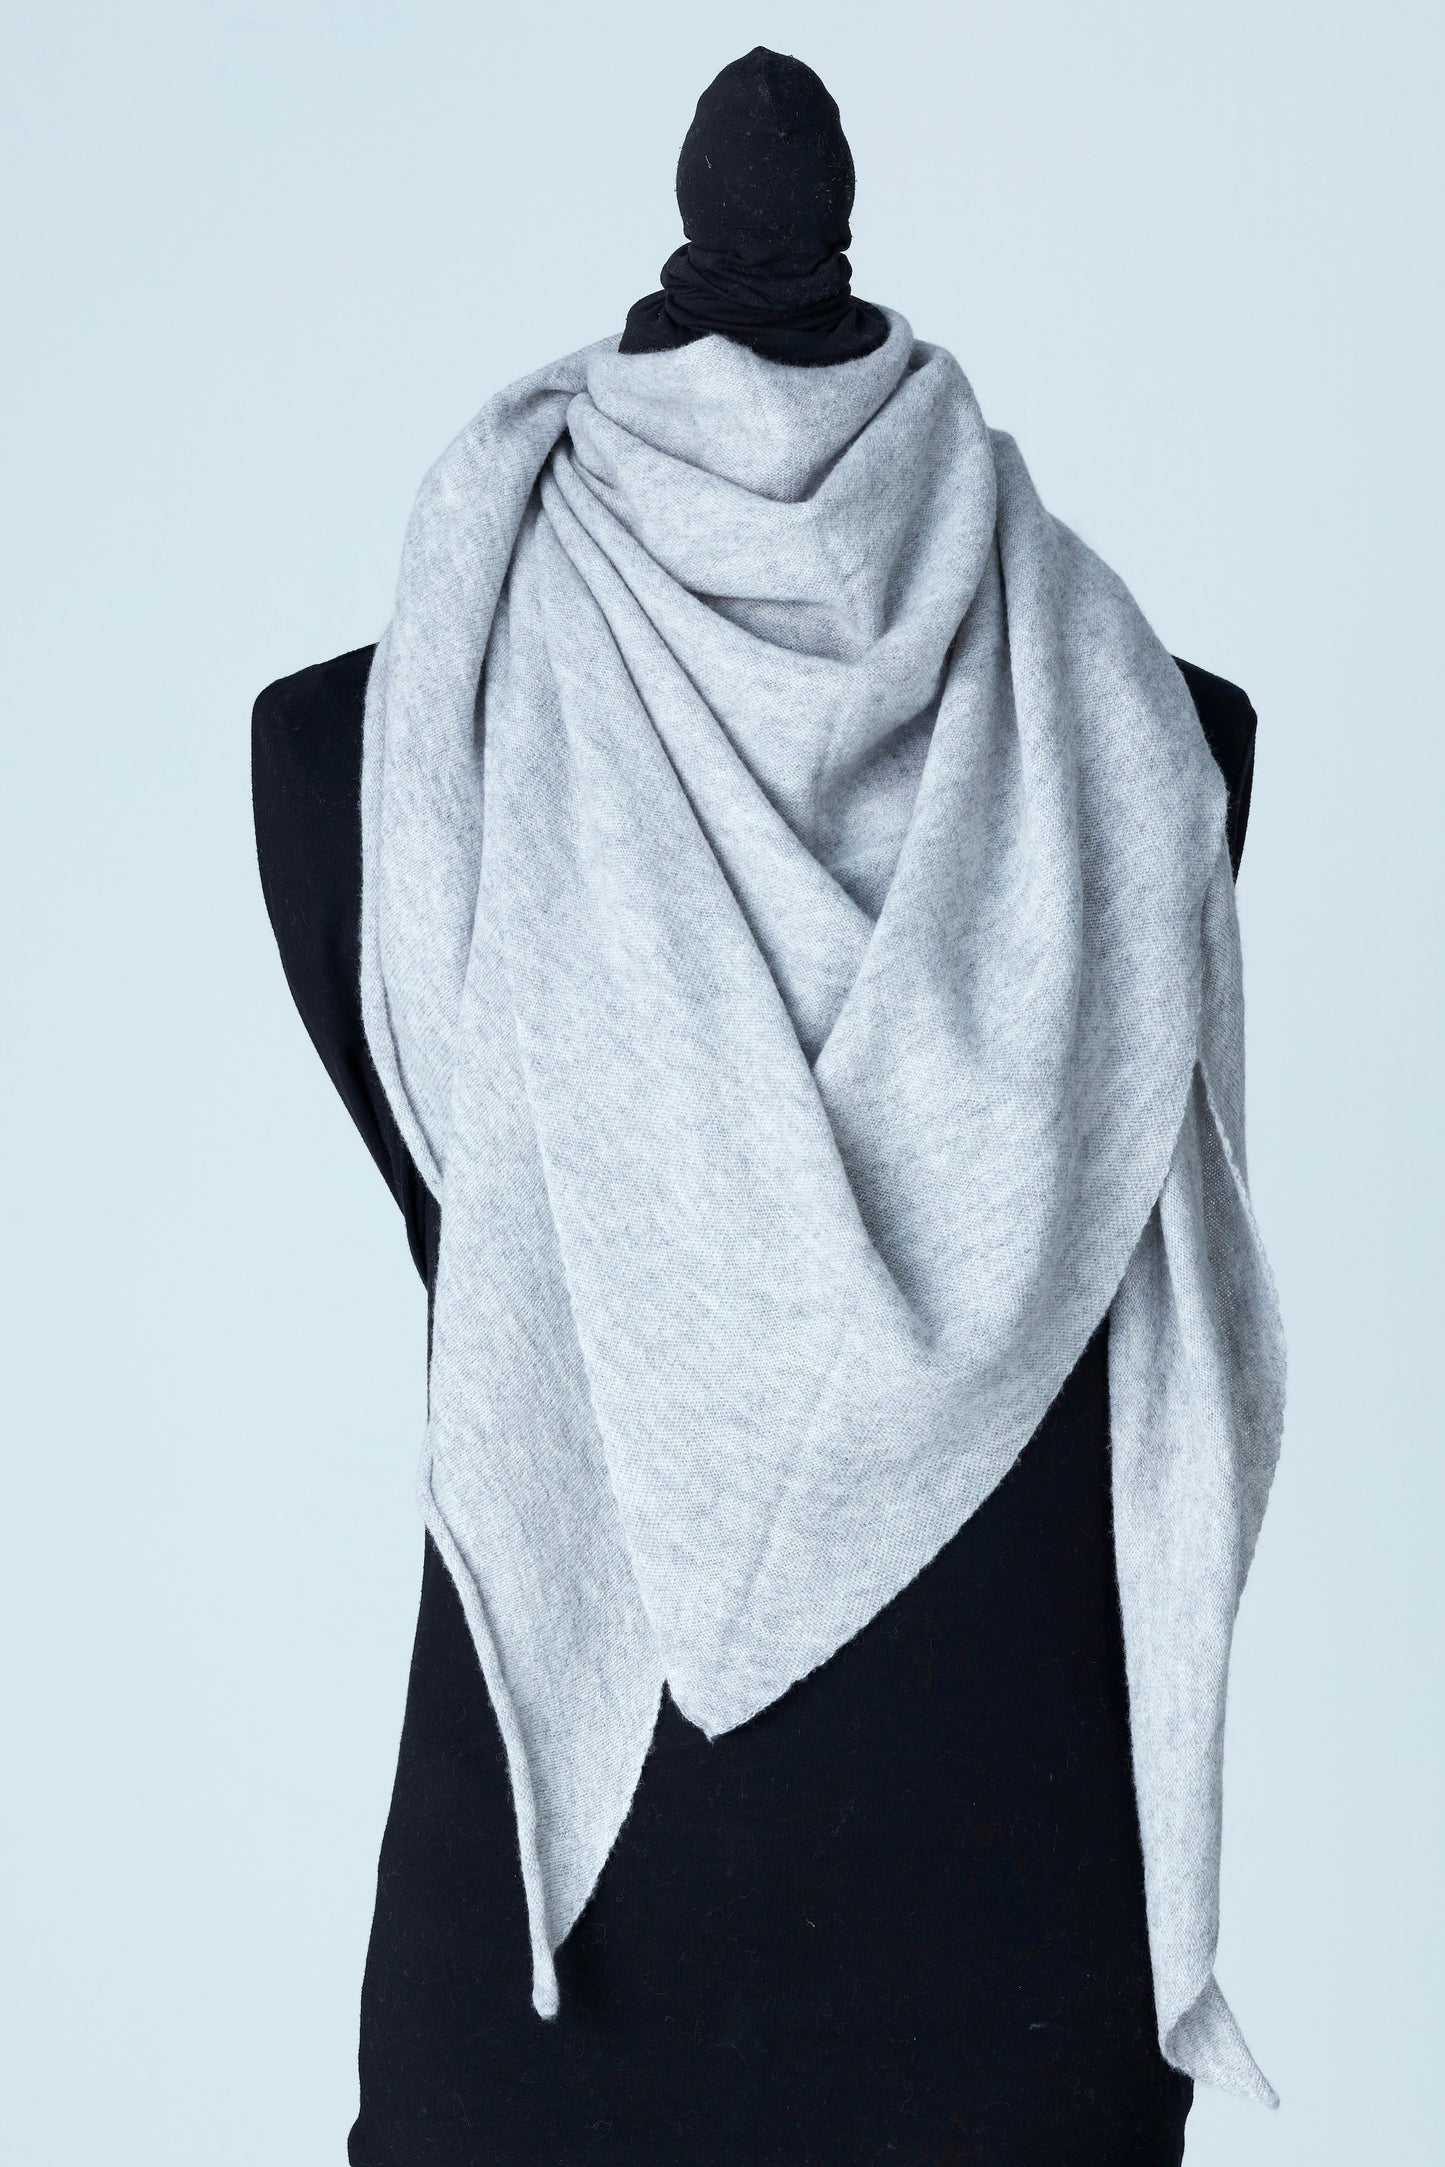 Vår Triangulära Cashmere Scarf i färgen light grey är inte bara en accessoar för att hålla dig varm, den är en stilfull deklaration av din personliga smak. Med en triangulär form erbjuder denna scarf ett unikt sätt att sätta färg och elegans på ditt utseende.